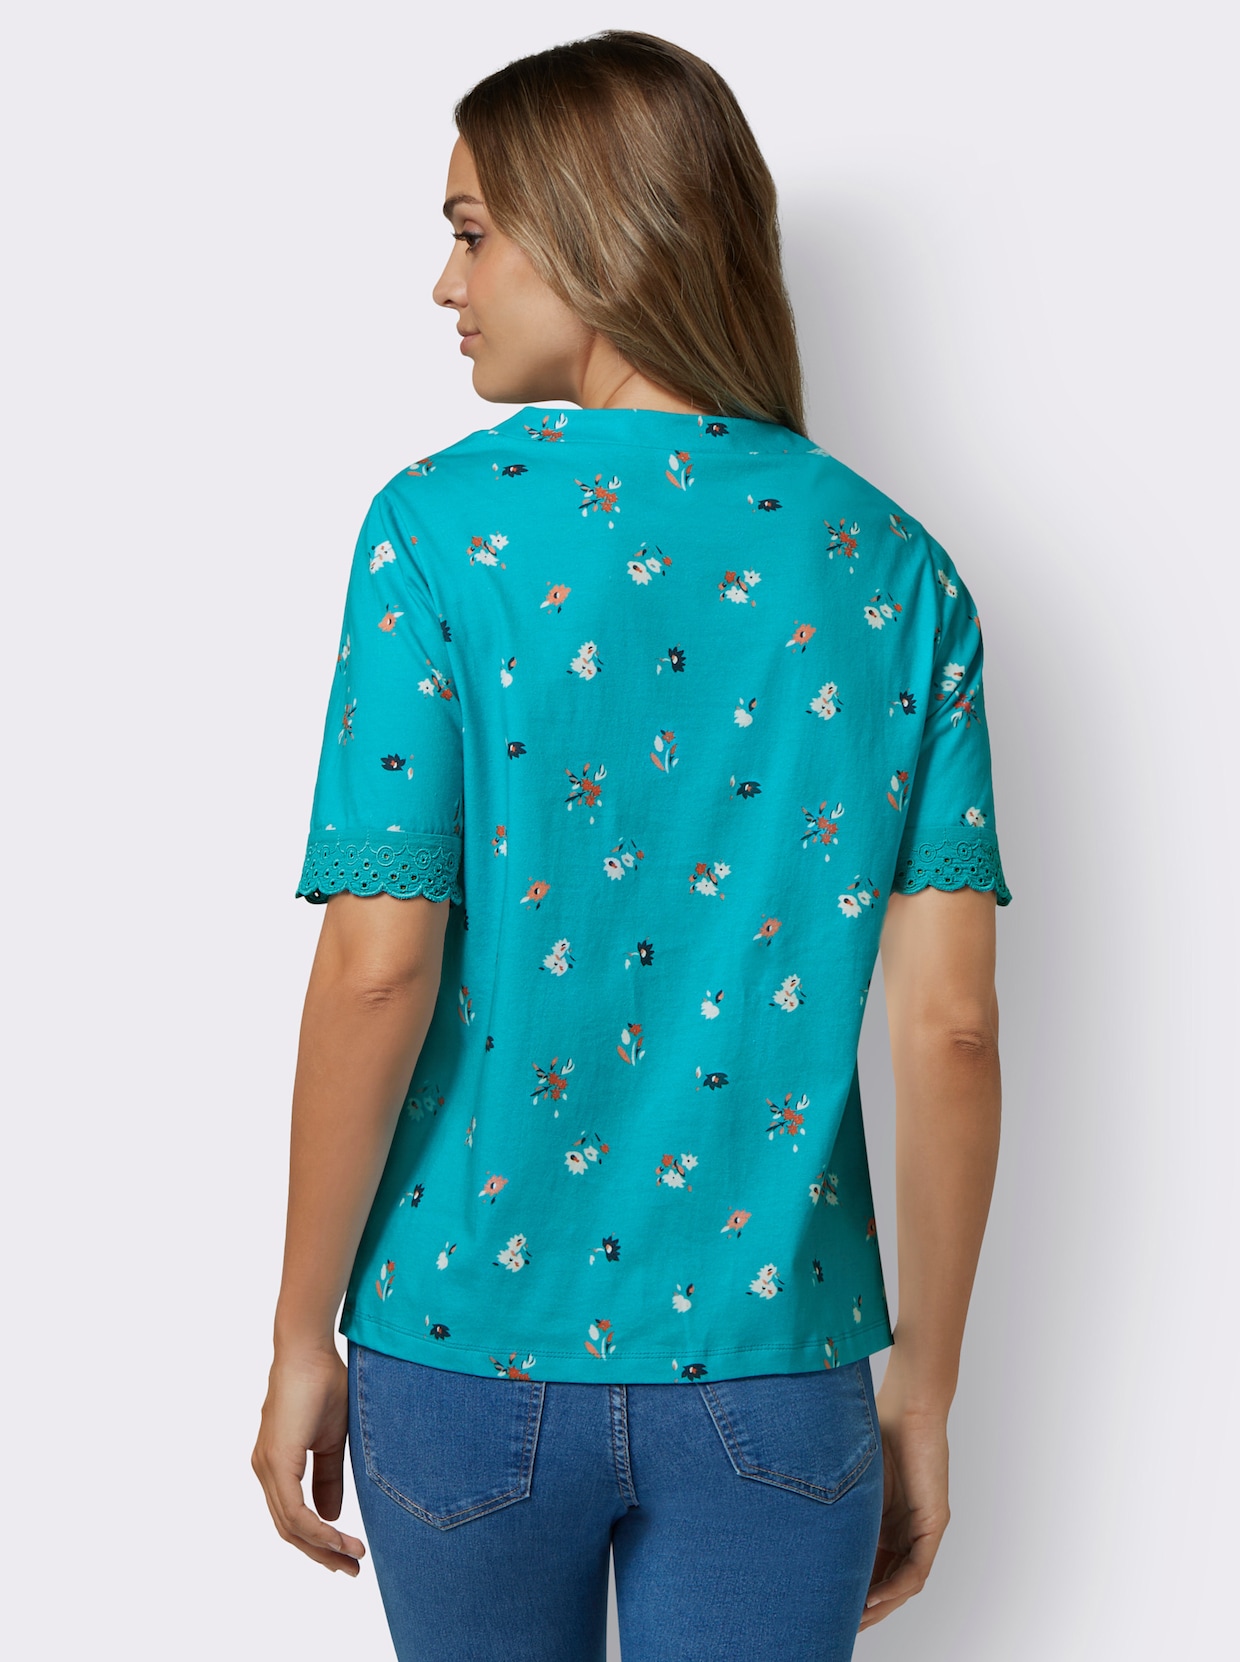 Kurzarm-Shirt - türkis-flamingo-bedruckt